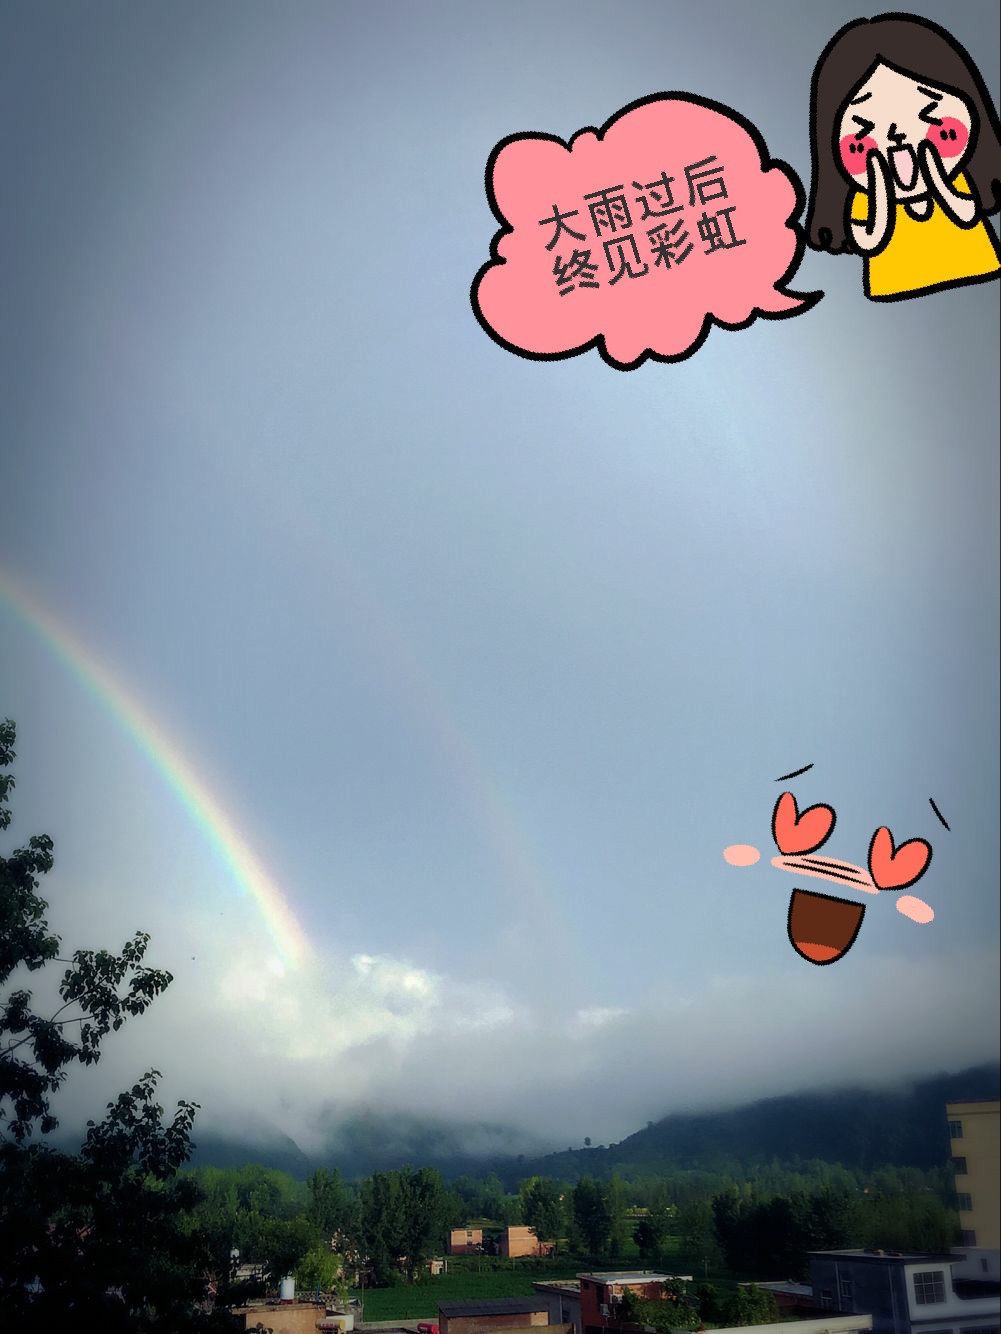 雨后会有一道彩虹_雨后彩虹的励志的句子_千岛湖雨后双彩虹图片